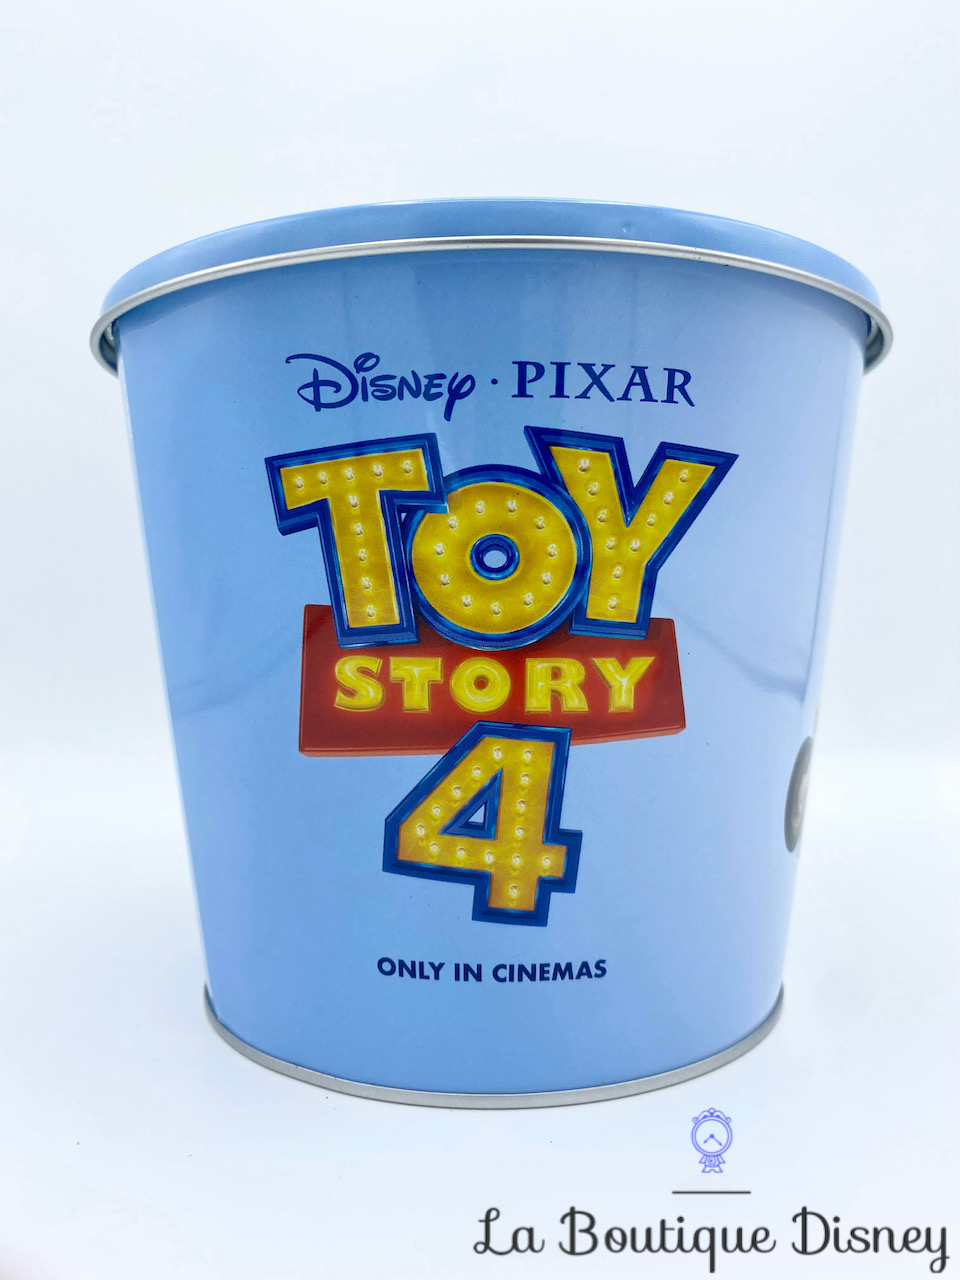 boite-métal-toy-story-4-disney-pixar-woody-buzz-alien-jouets-pot-7